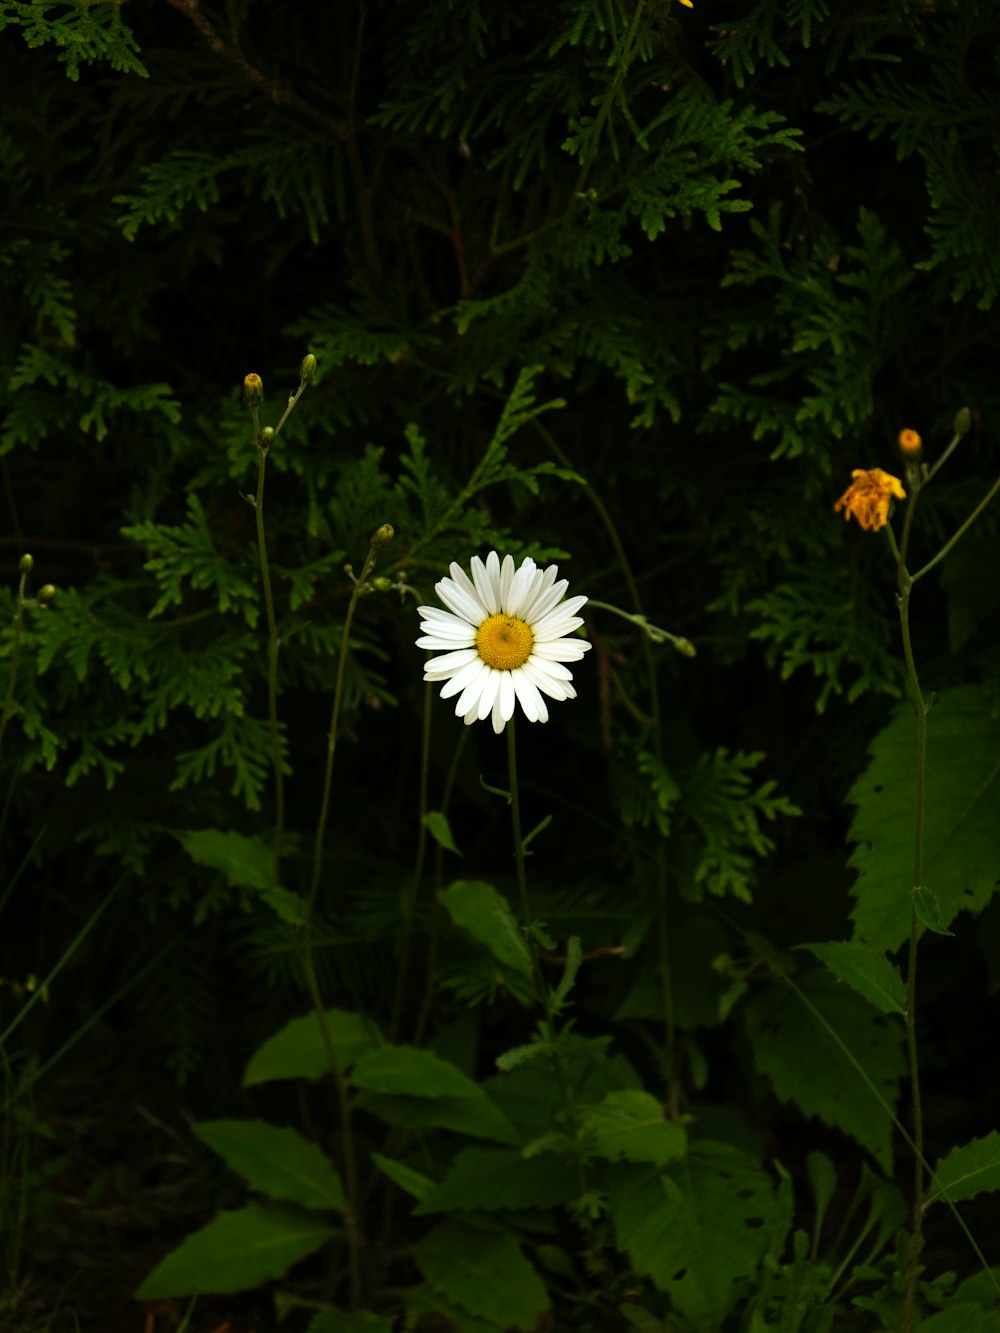 Foto Uma flor branca e amarela sentada no meio de uma floresta – Imagem de  Natureza grátis no Unsplash